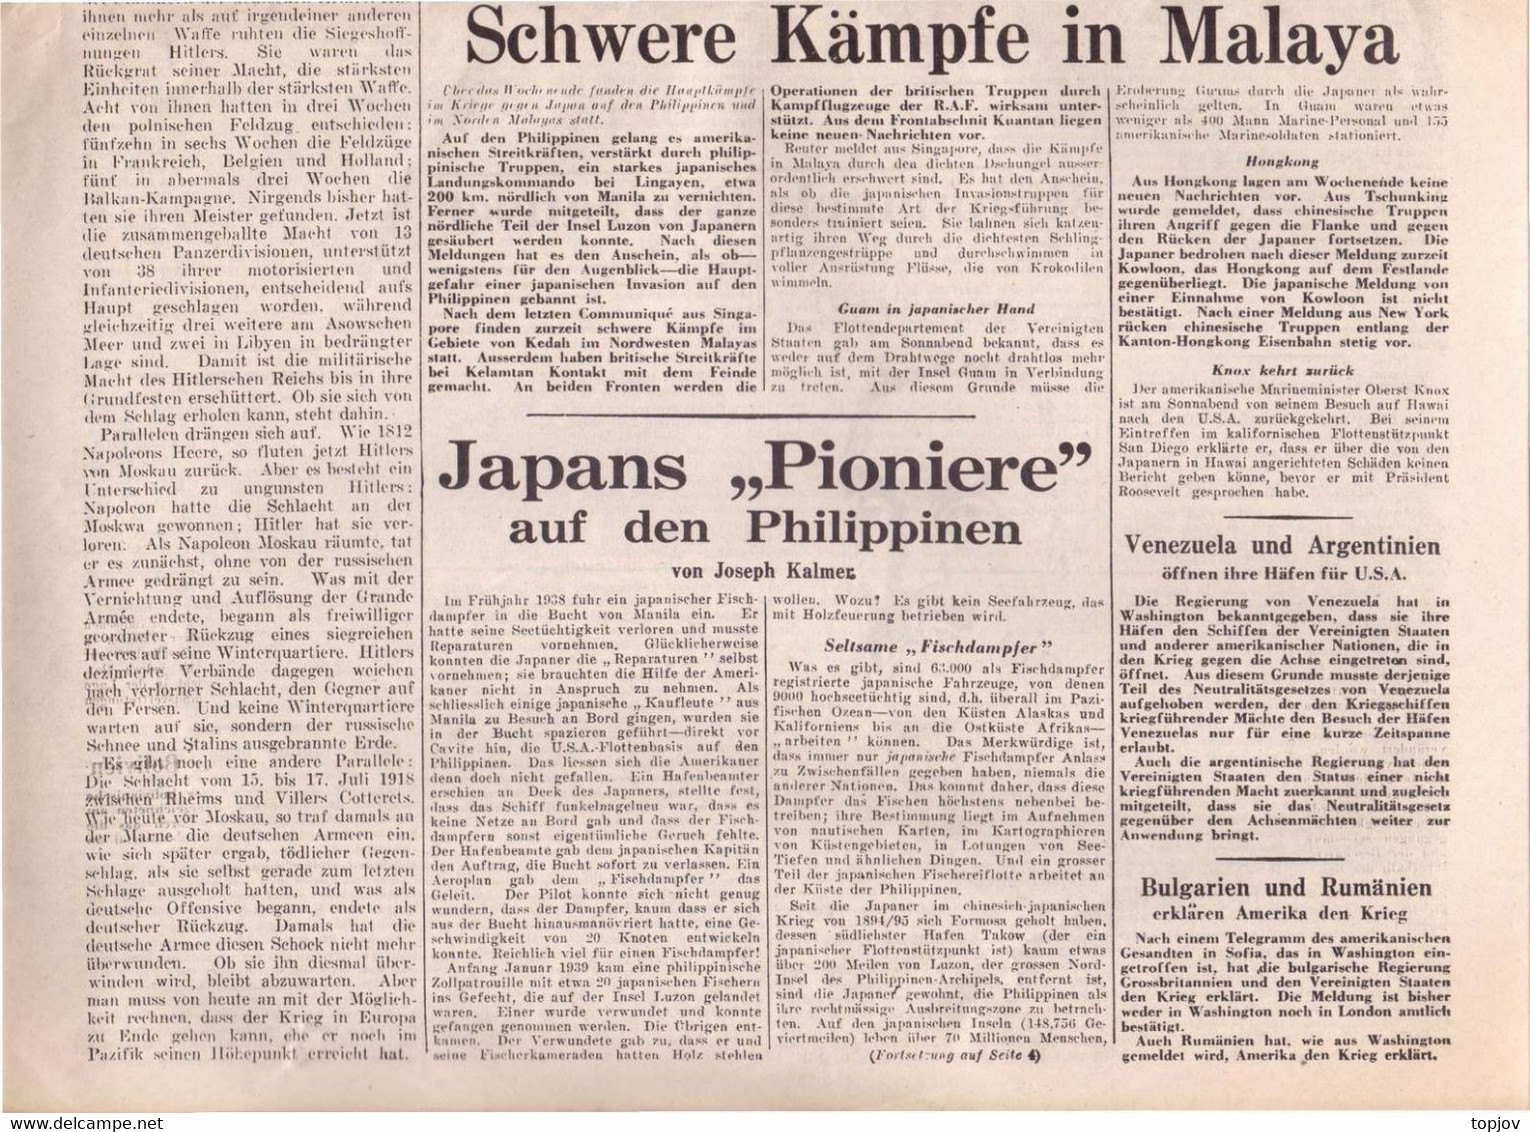 ENGLAND -  DIE  ZEITUNG  - KRIEG  MOSKAU - LONDON  - Komplette Zeitung - 1941 - Algemene Informatie